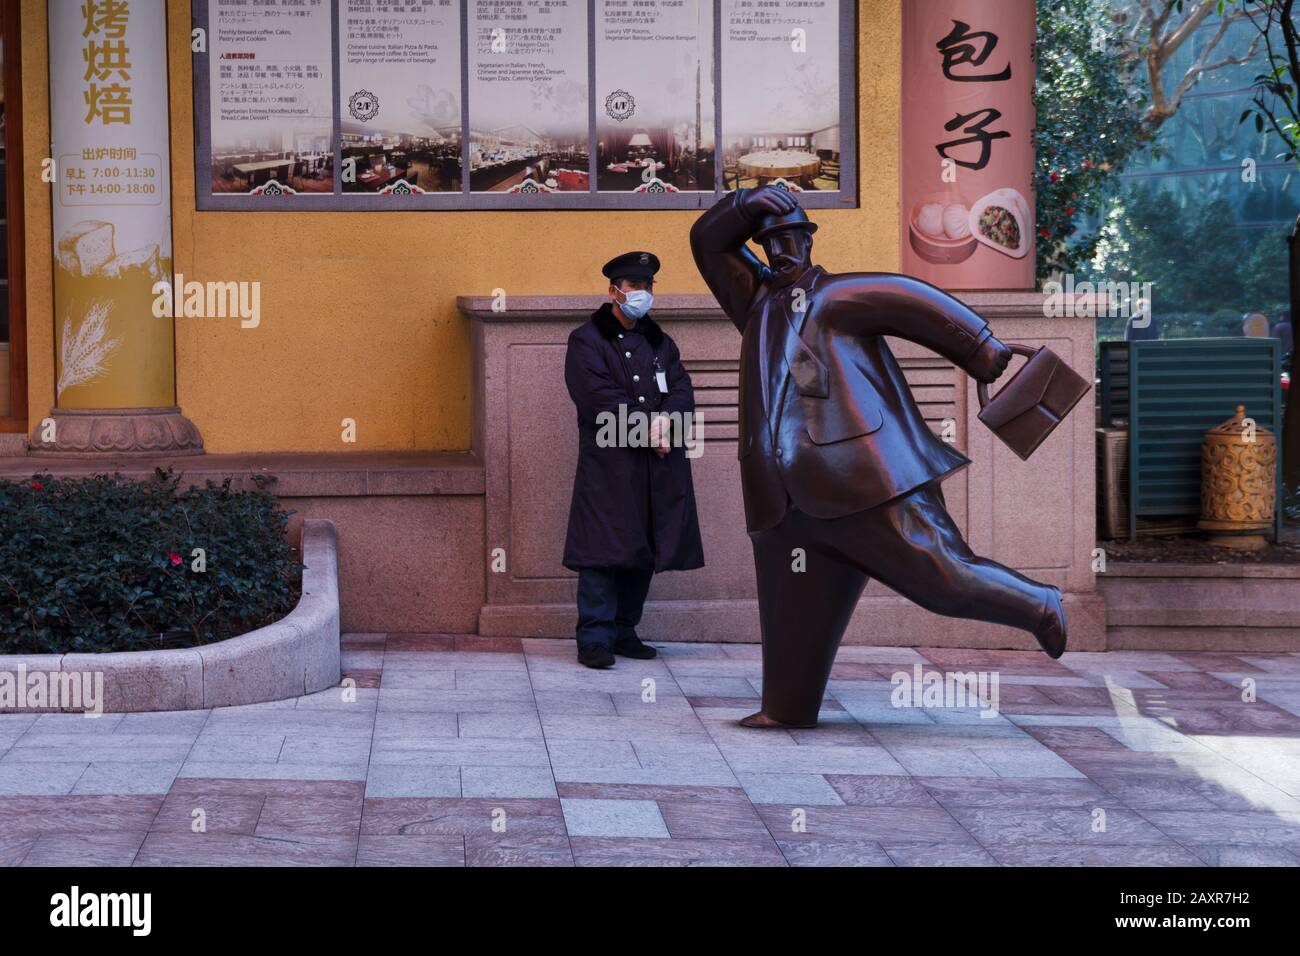 Guarda la máscara en la calle Shanghai Foto de stock